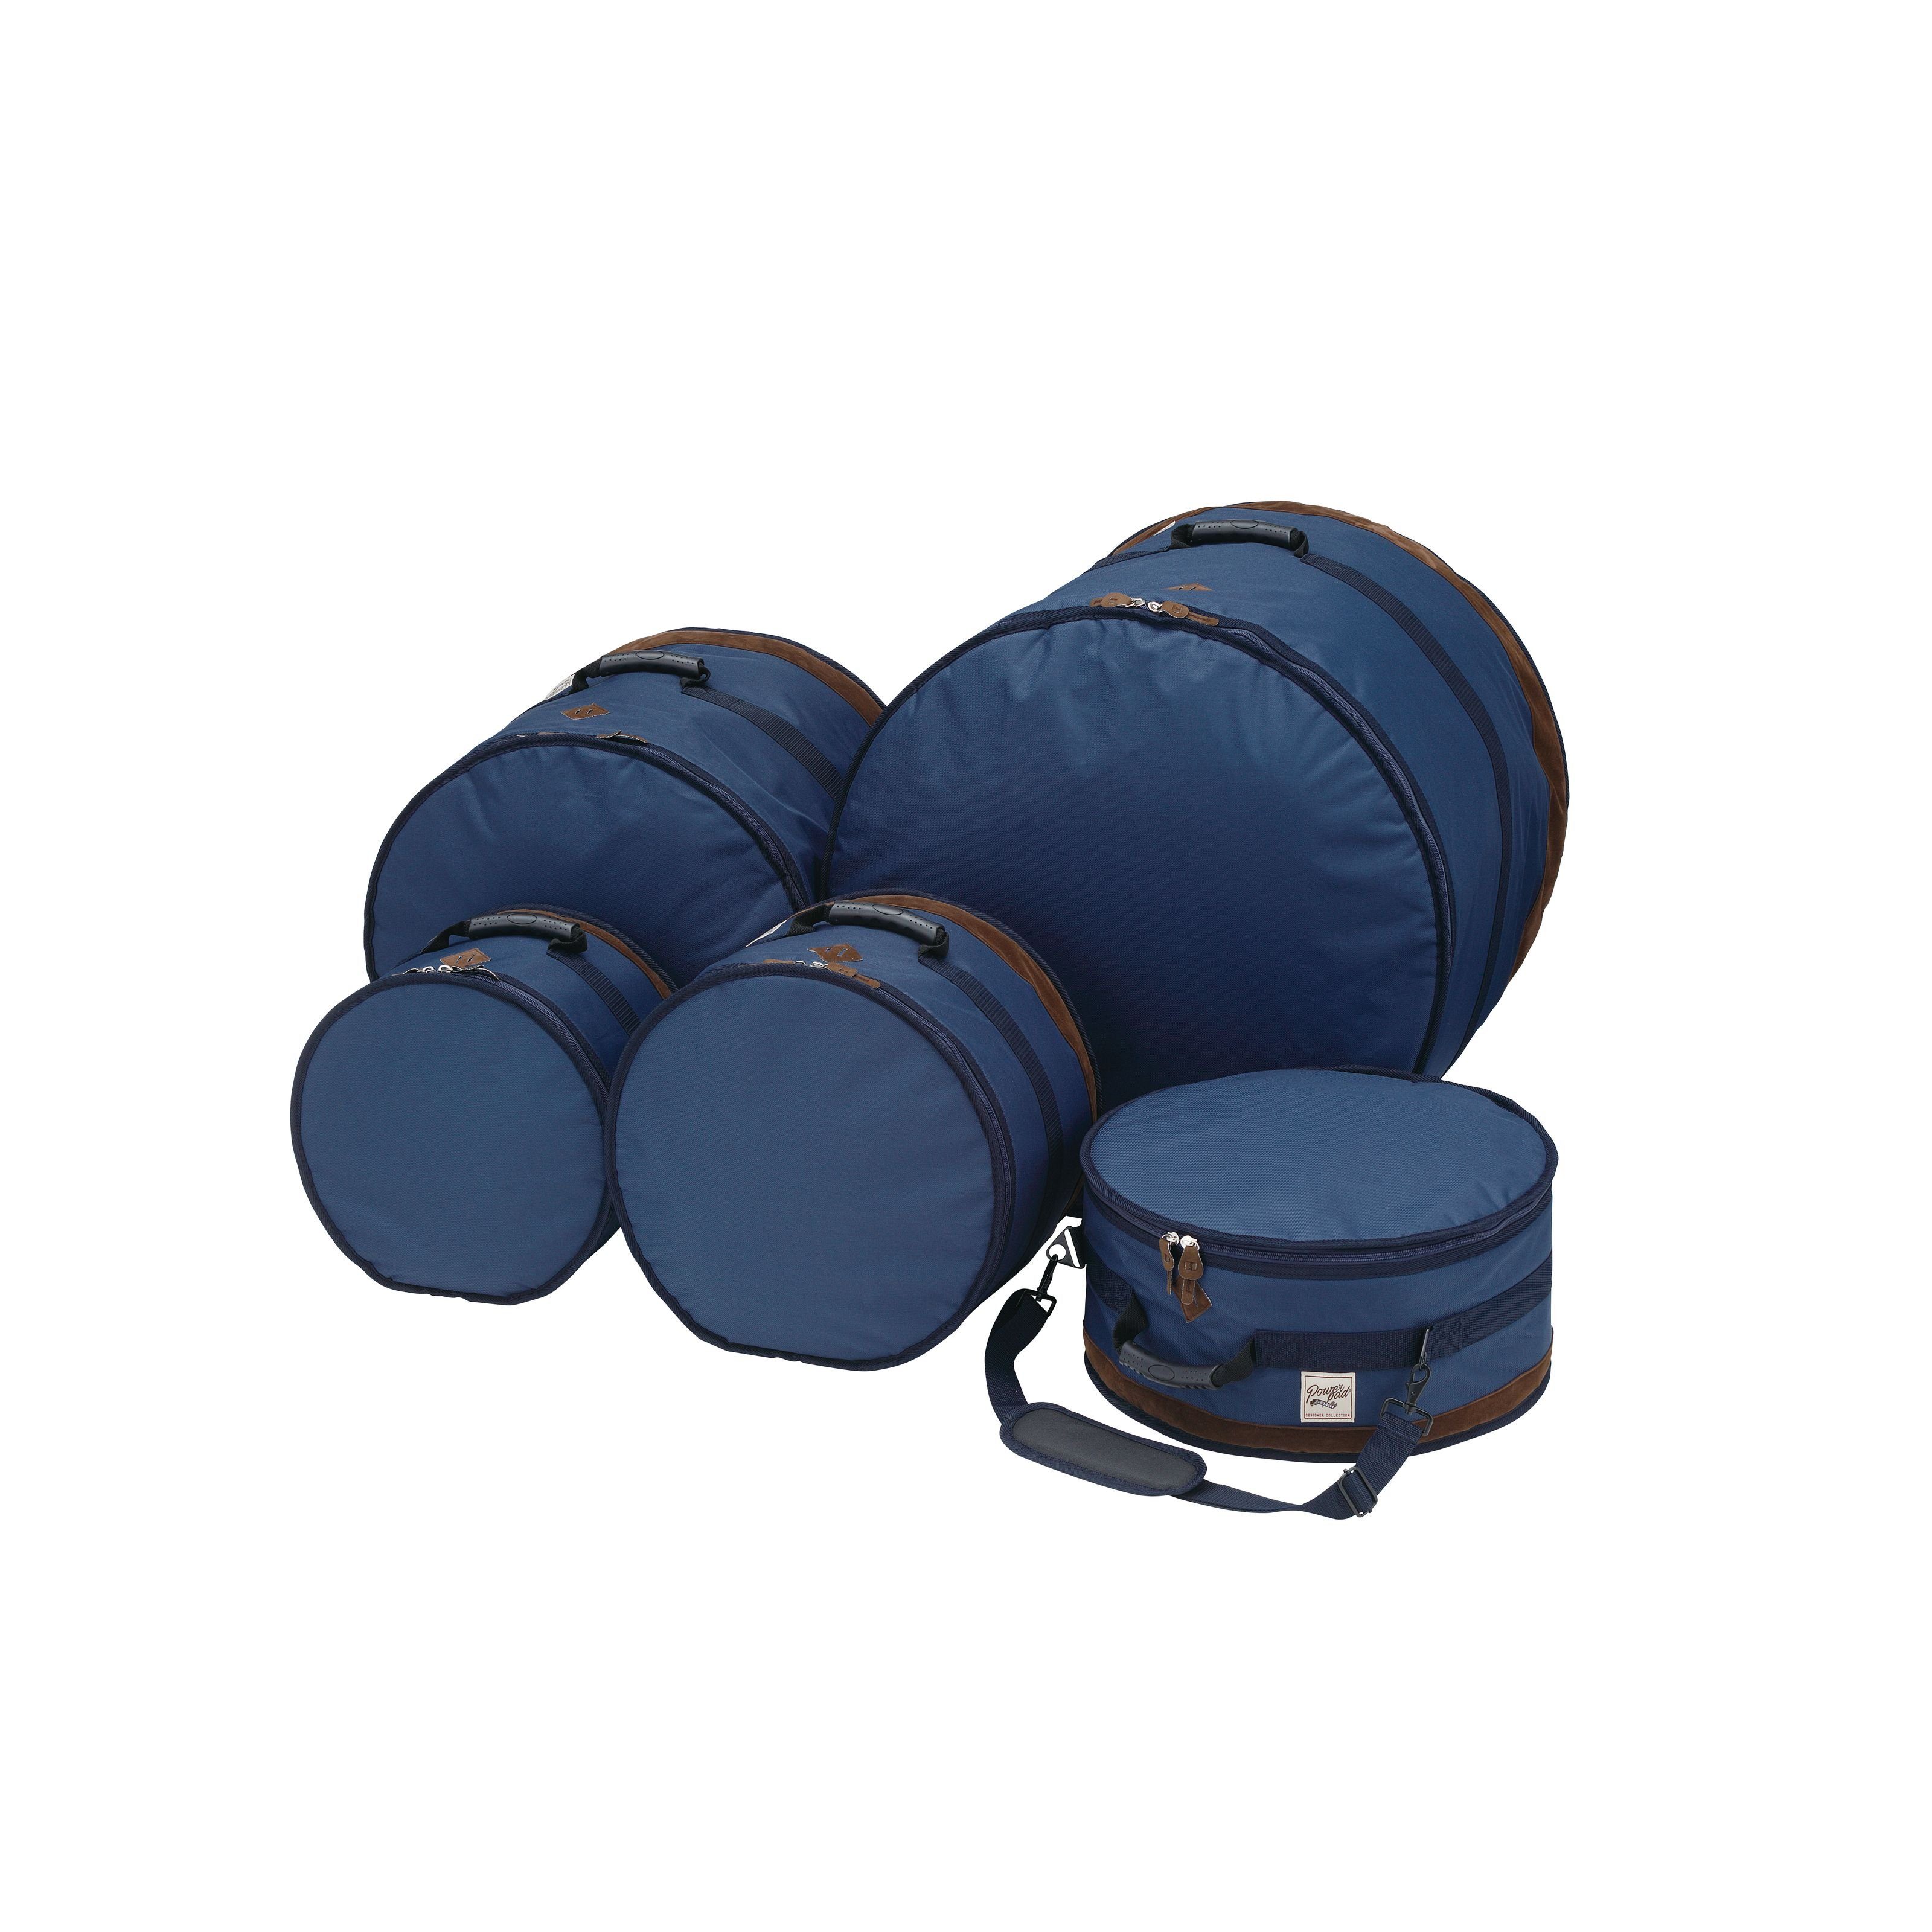 Tama Spielzeug-Musikinstrument, TDSS52KNB Powerpad Designer Bag Set Navy Blue - Drum Taschen Set